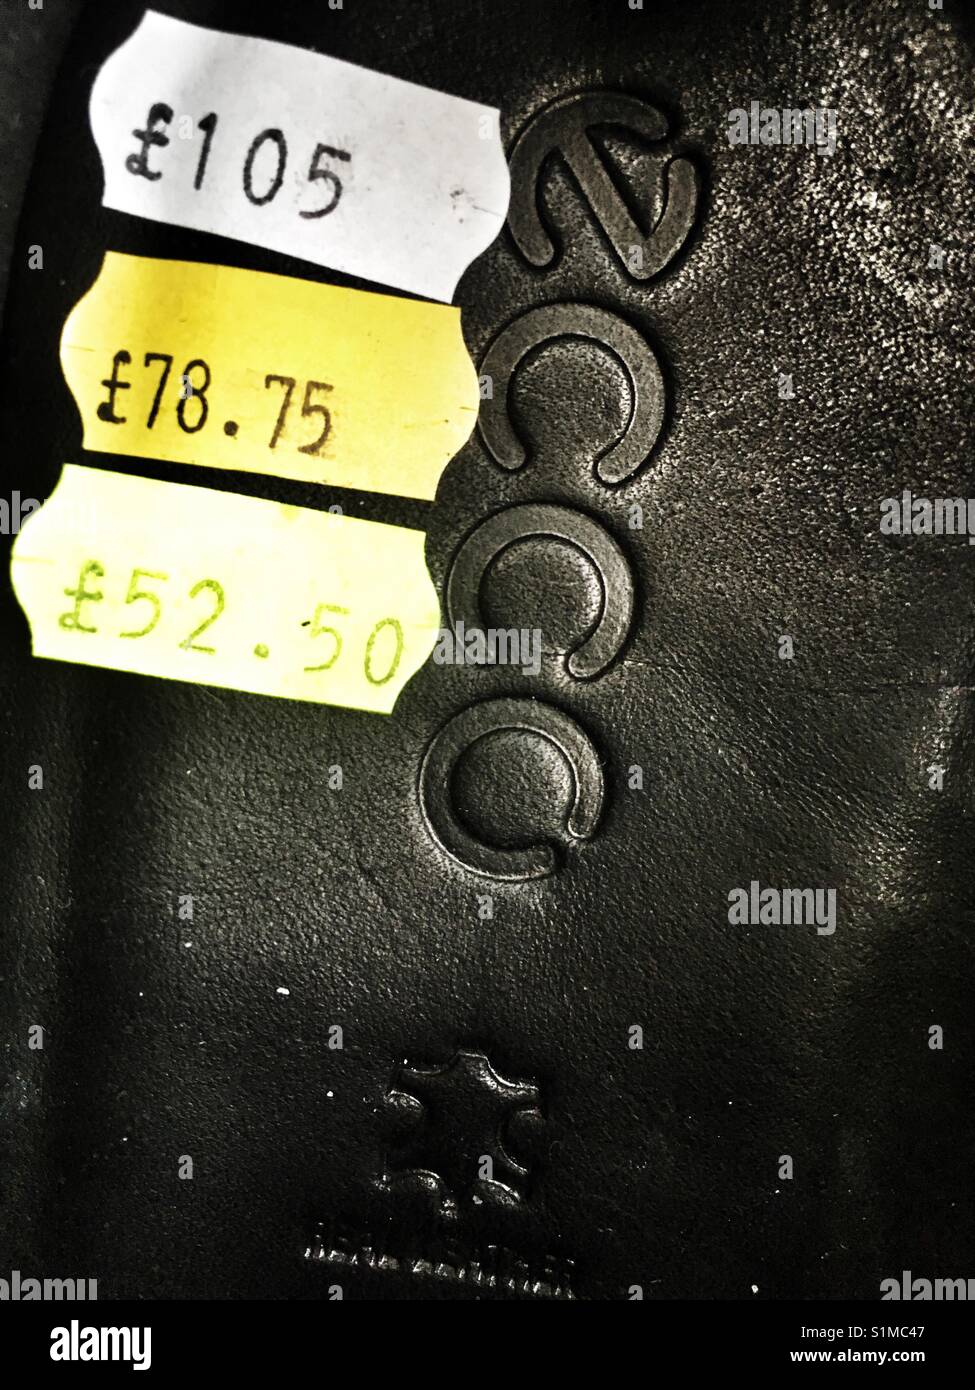 Les chaussures Ecco Les réductions de prix Photo Stock - Alamy